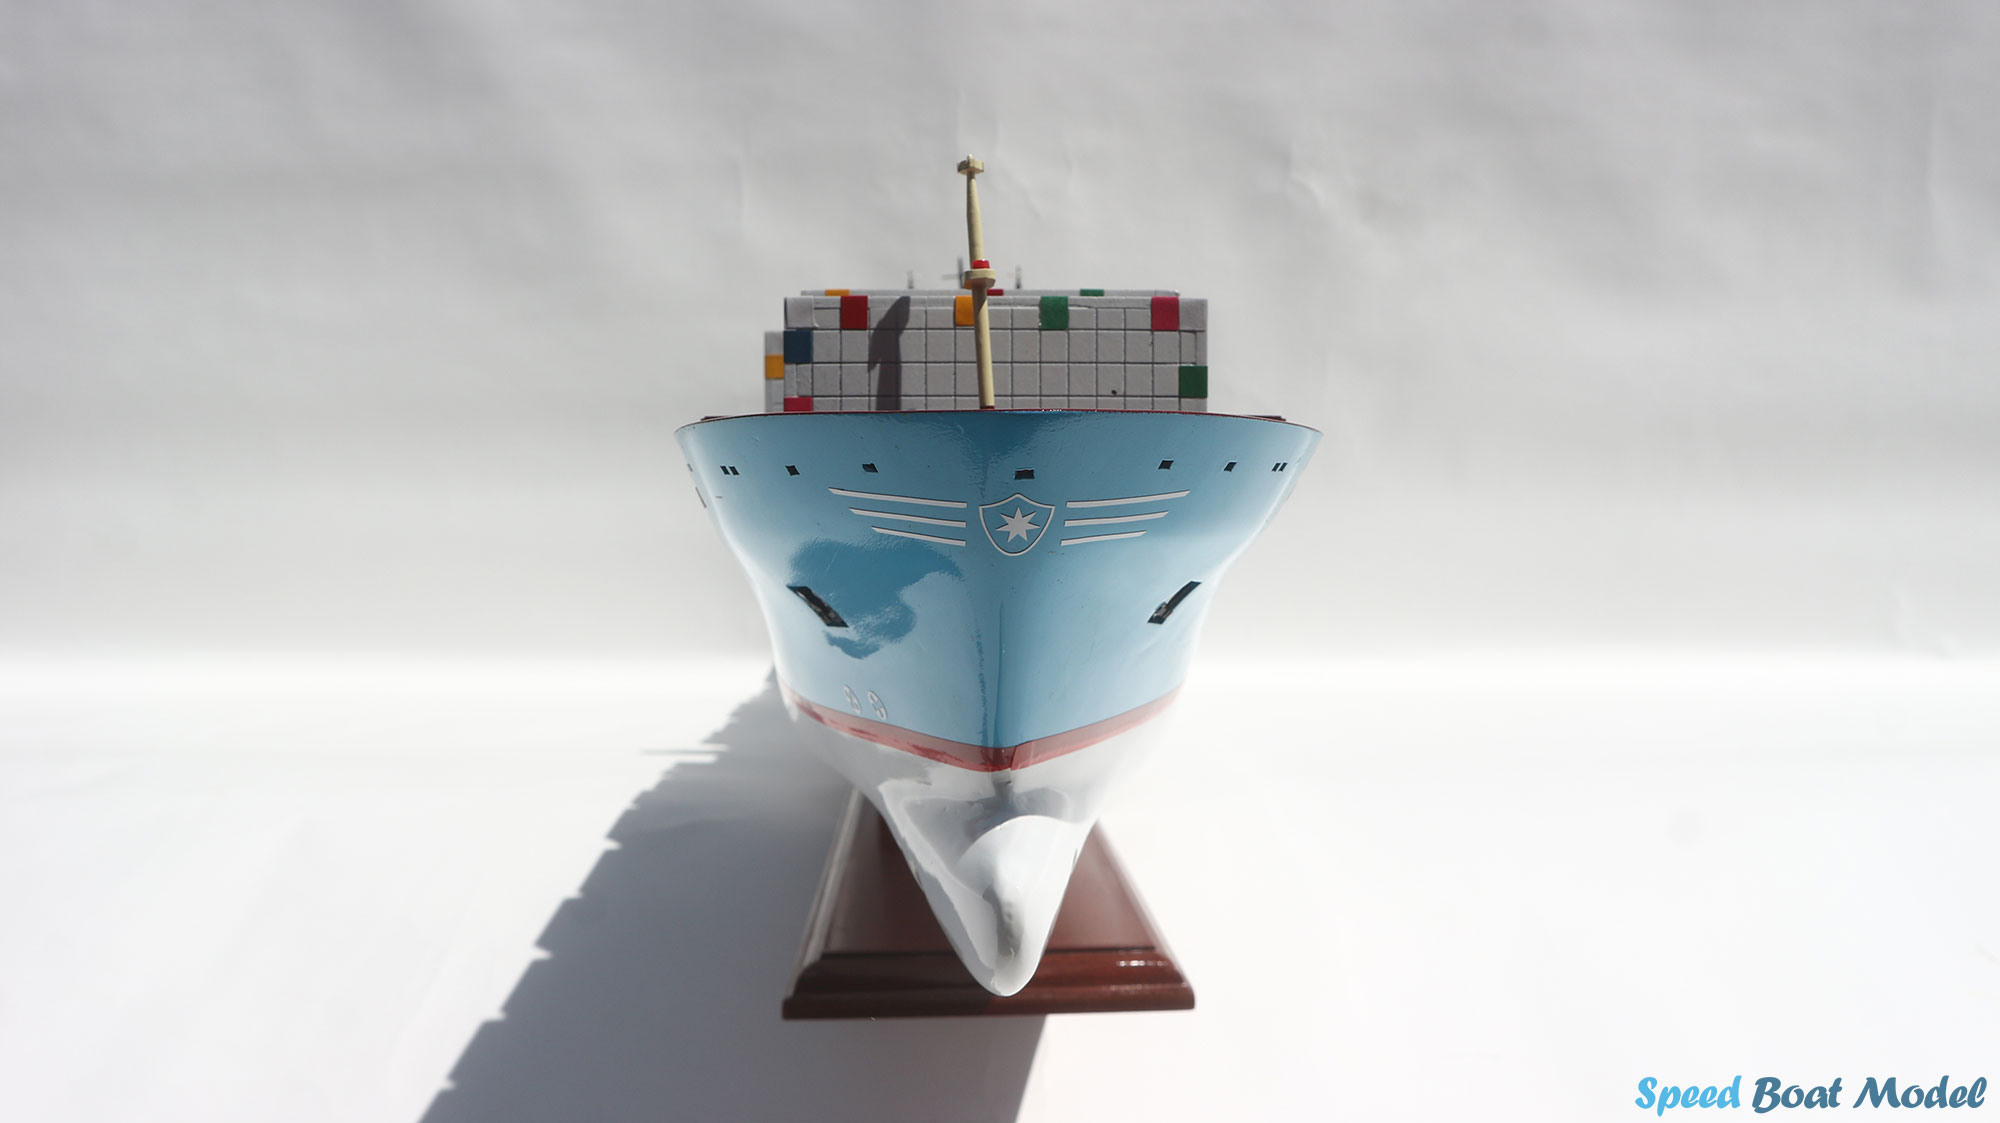 Emma Maersk Commercial Ship Model 28